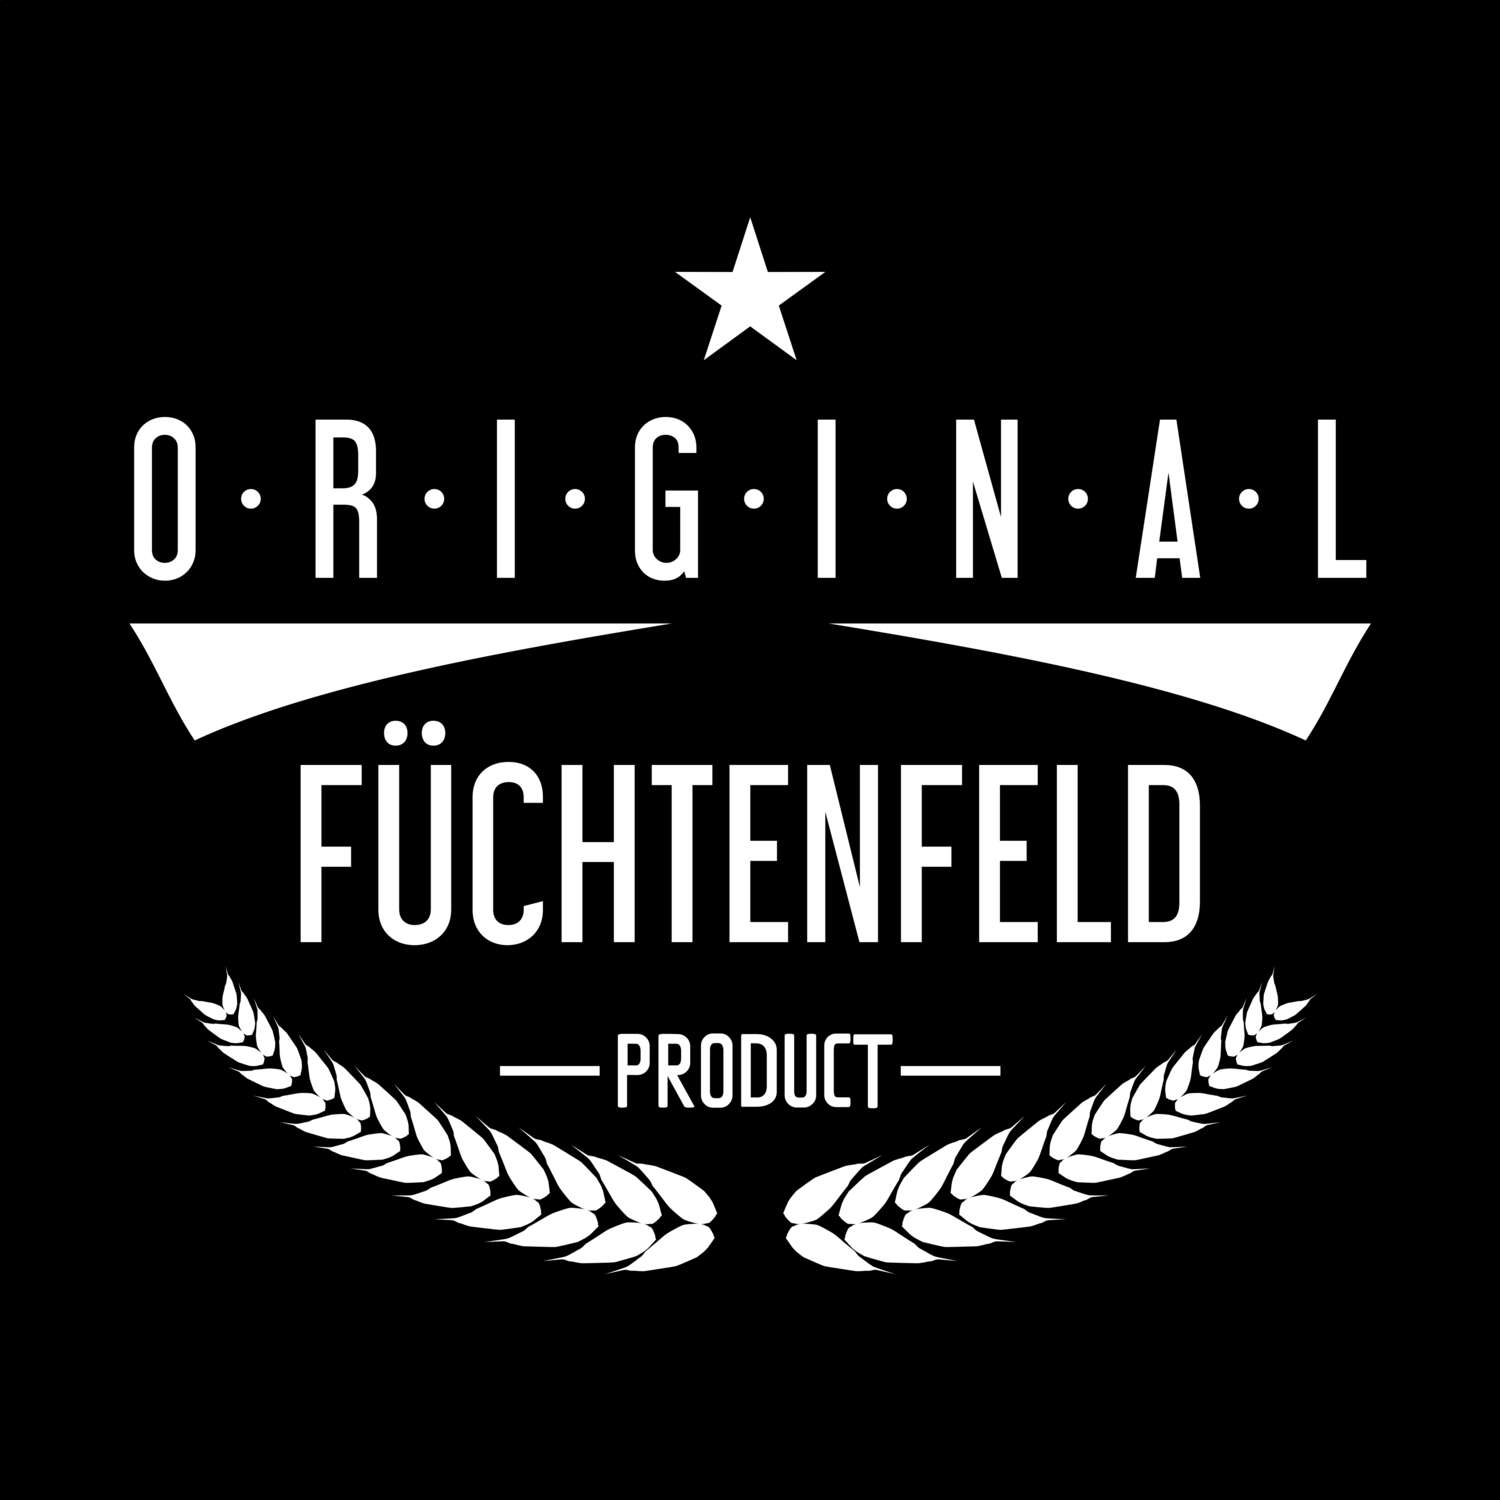 Füchtenfeld T-Shirt »Original Product«